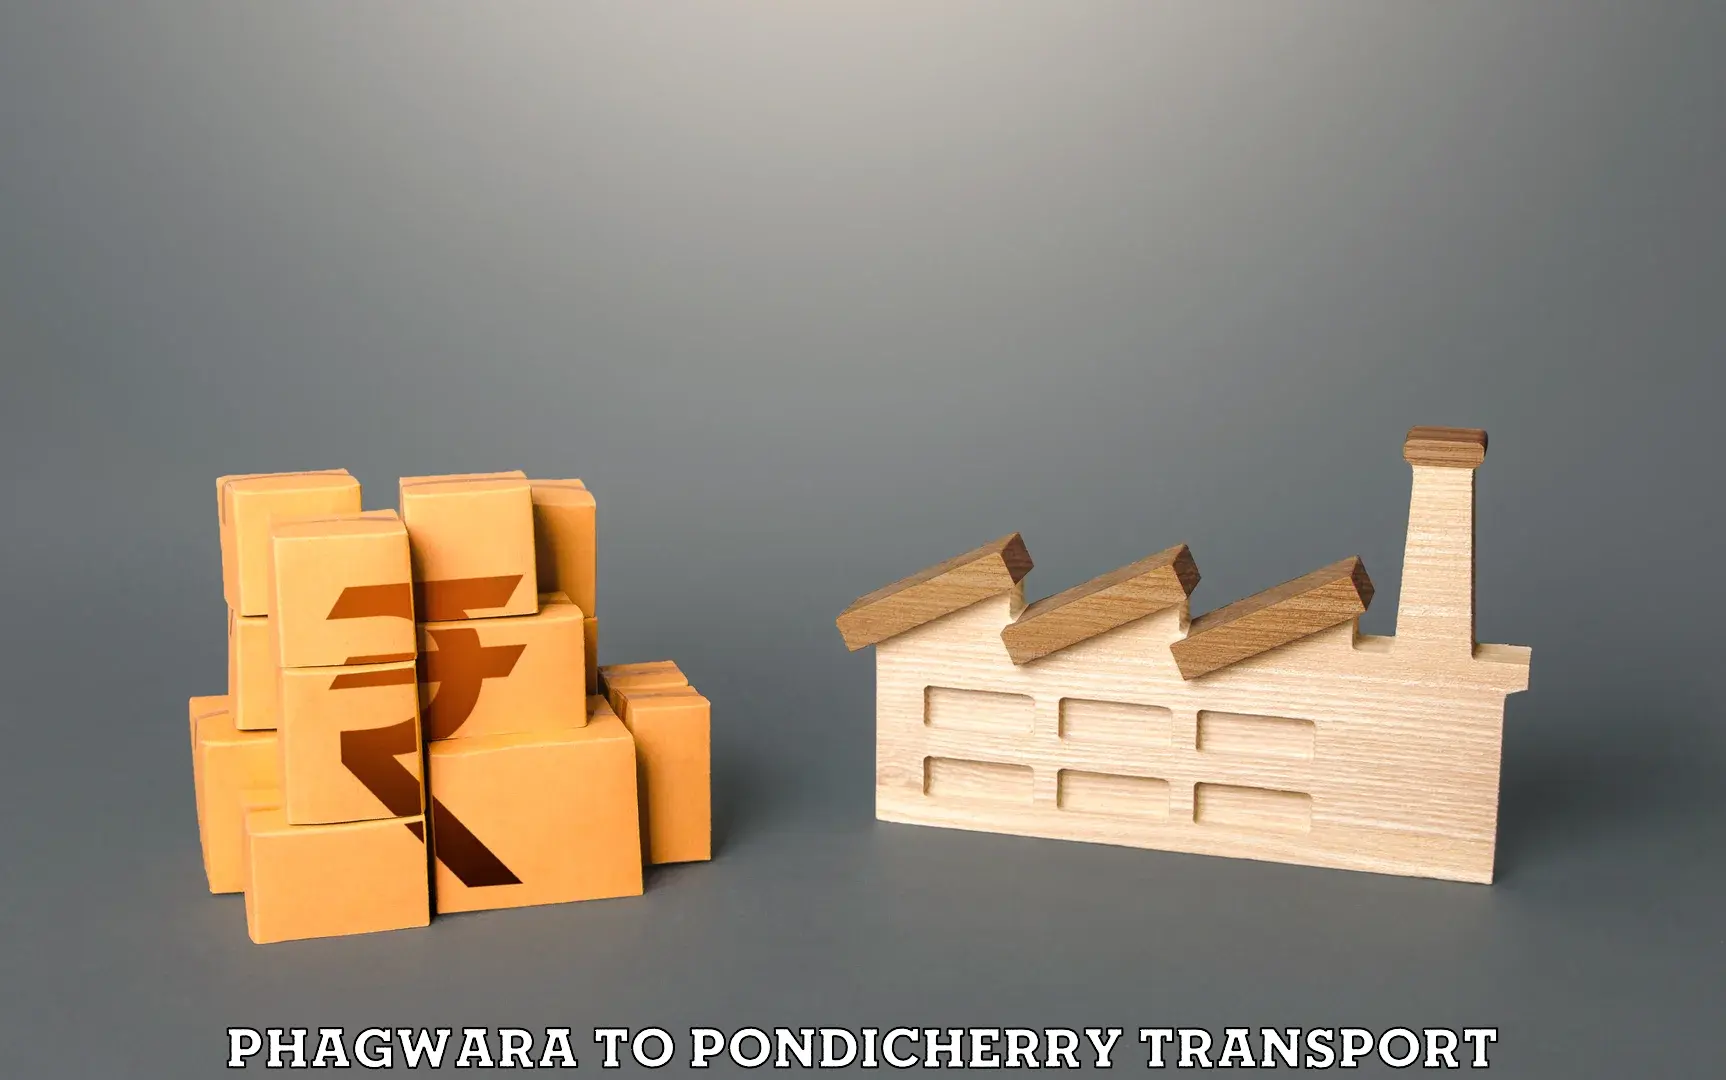 Daily transport service Phagwara to Pondicherry University